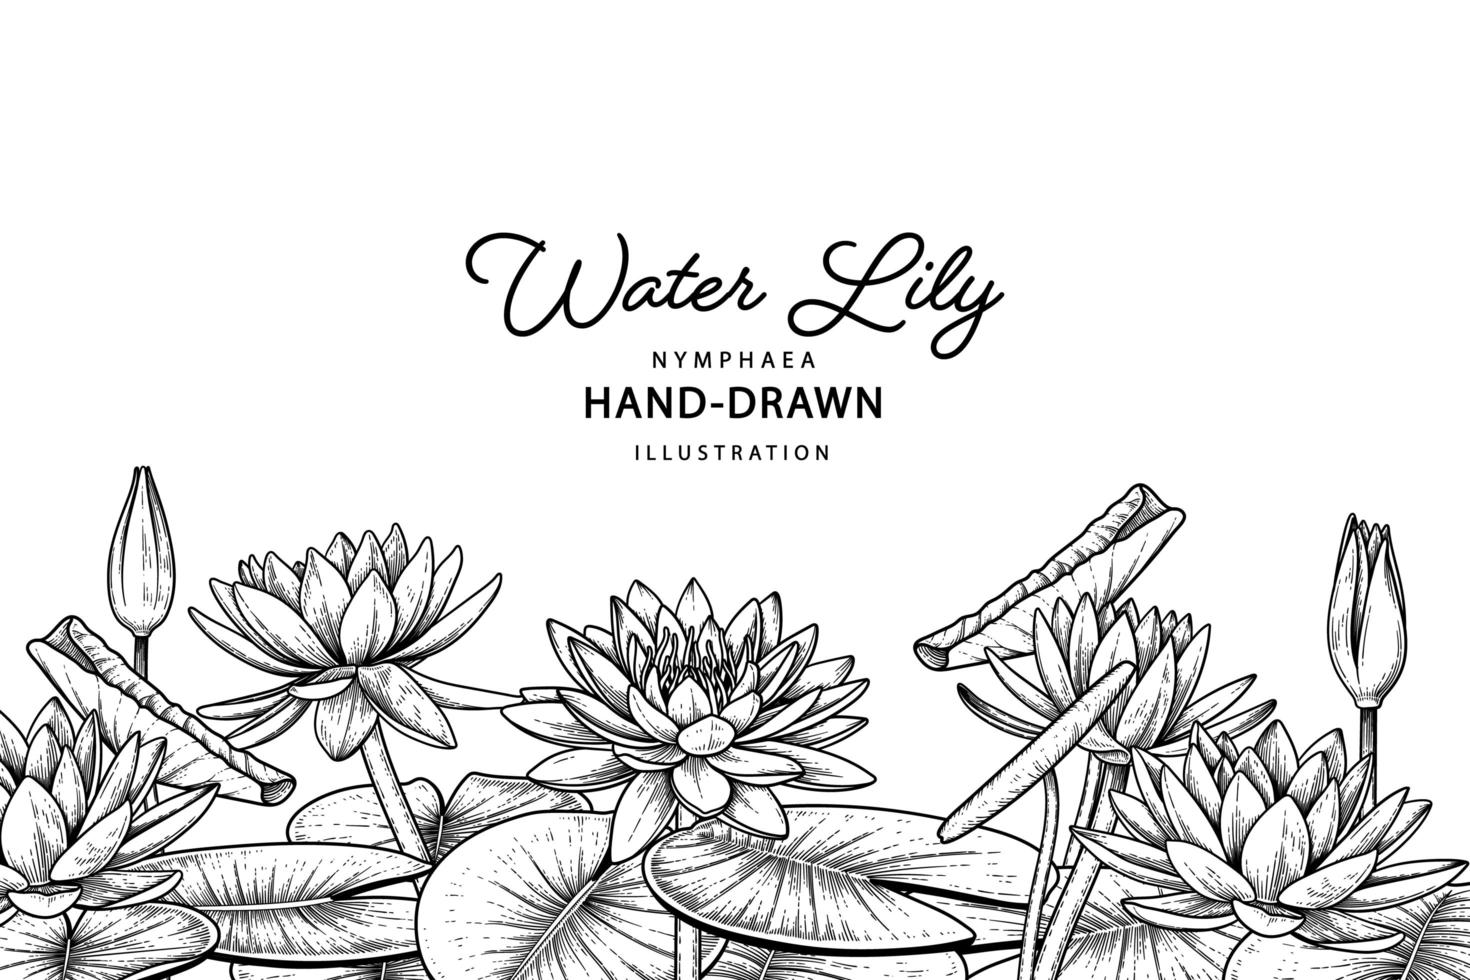 flor de lirio de agua boceto dibujado a mano ilustraciones botánicas vector